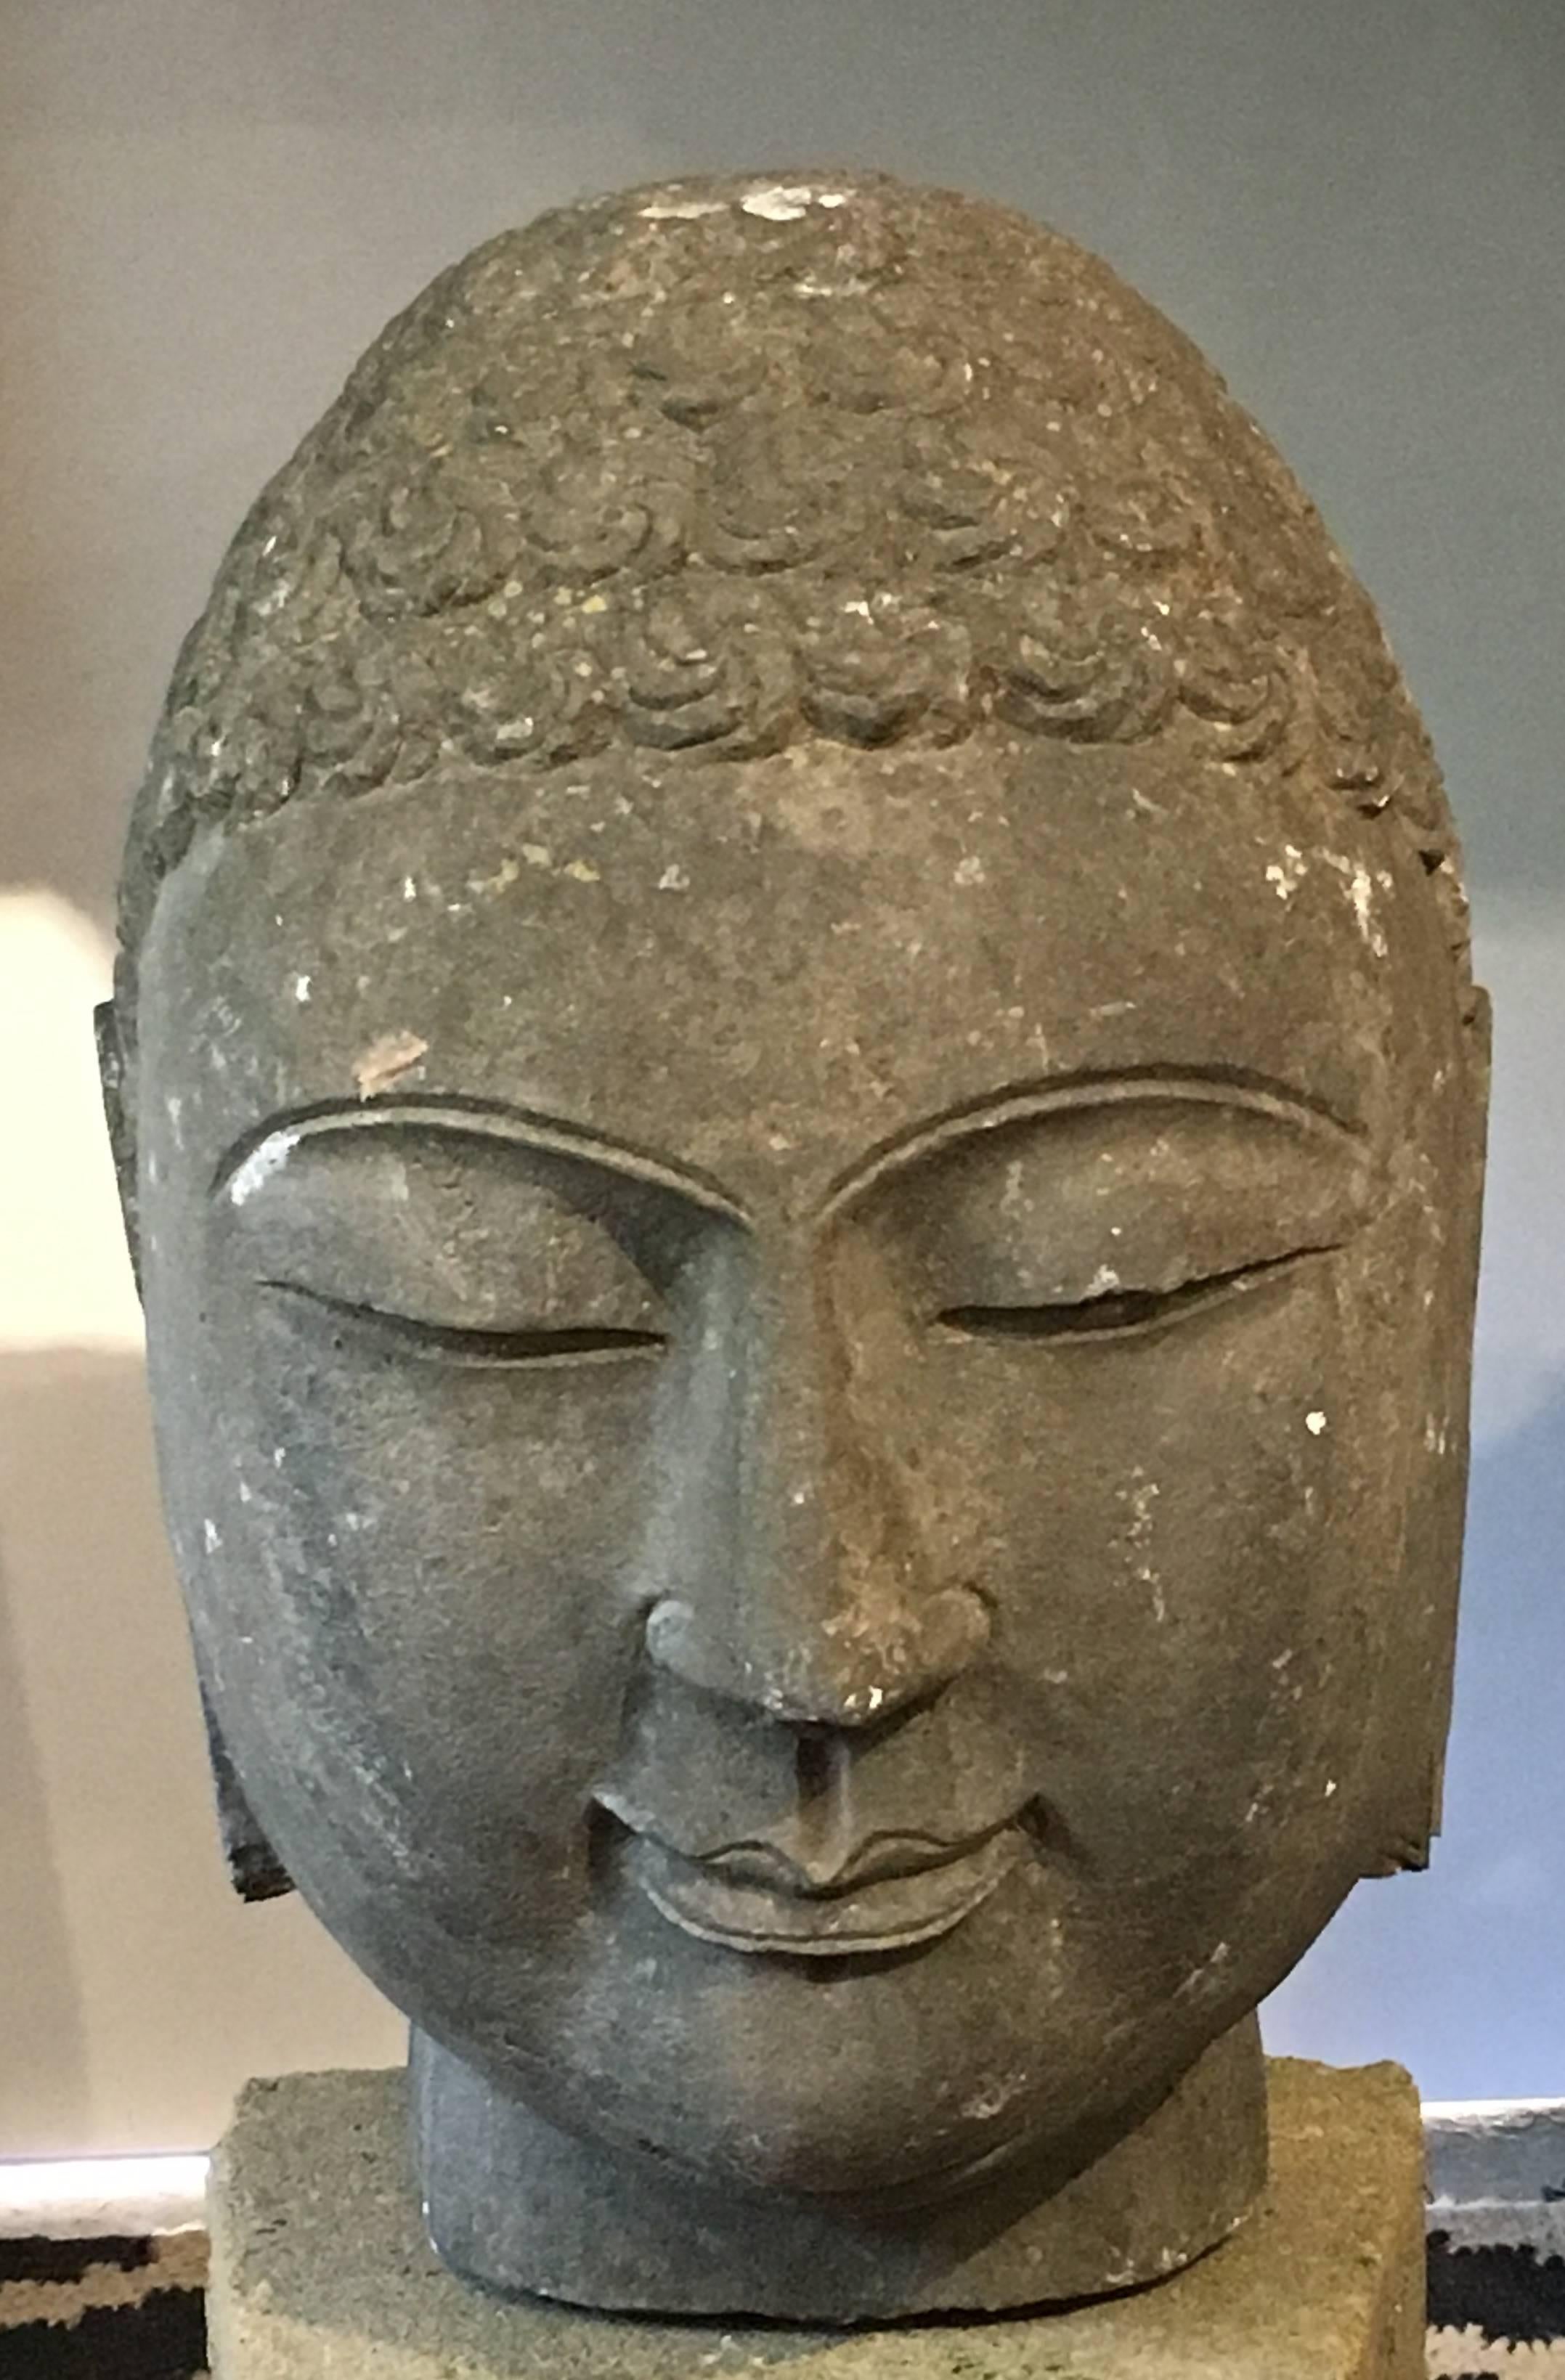 Monumentaler Kopf des Buddha aus Kalkstein, China, Mitte des 20. Jahrhunderts.

Der große geschnitzte Kopf aus Kalkstein zeigt eine ruhige Sinnlichkeit, die typisch für den Stil der Nördlichen Qi ist, und folgt den stilistischen Konventionen der